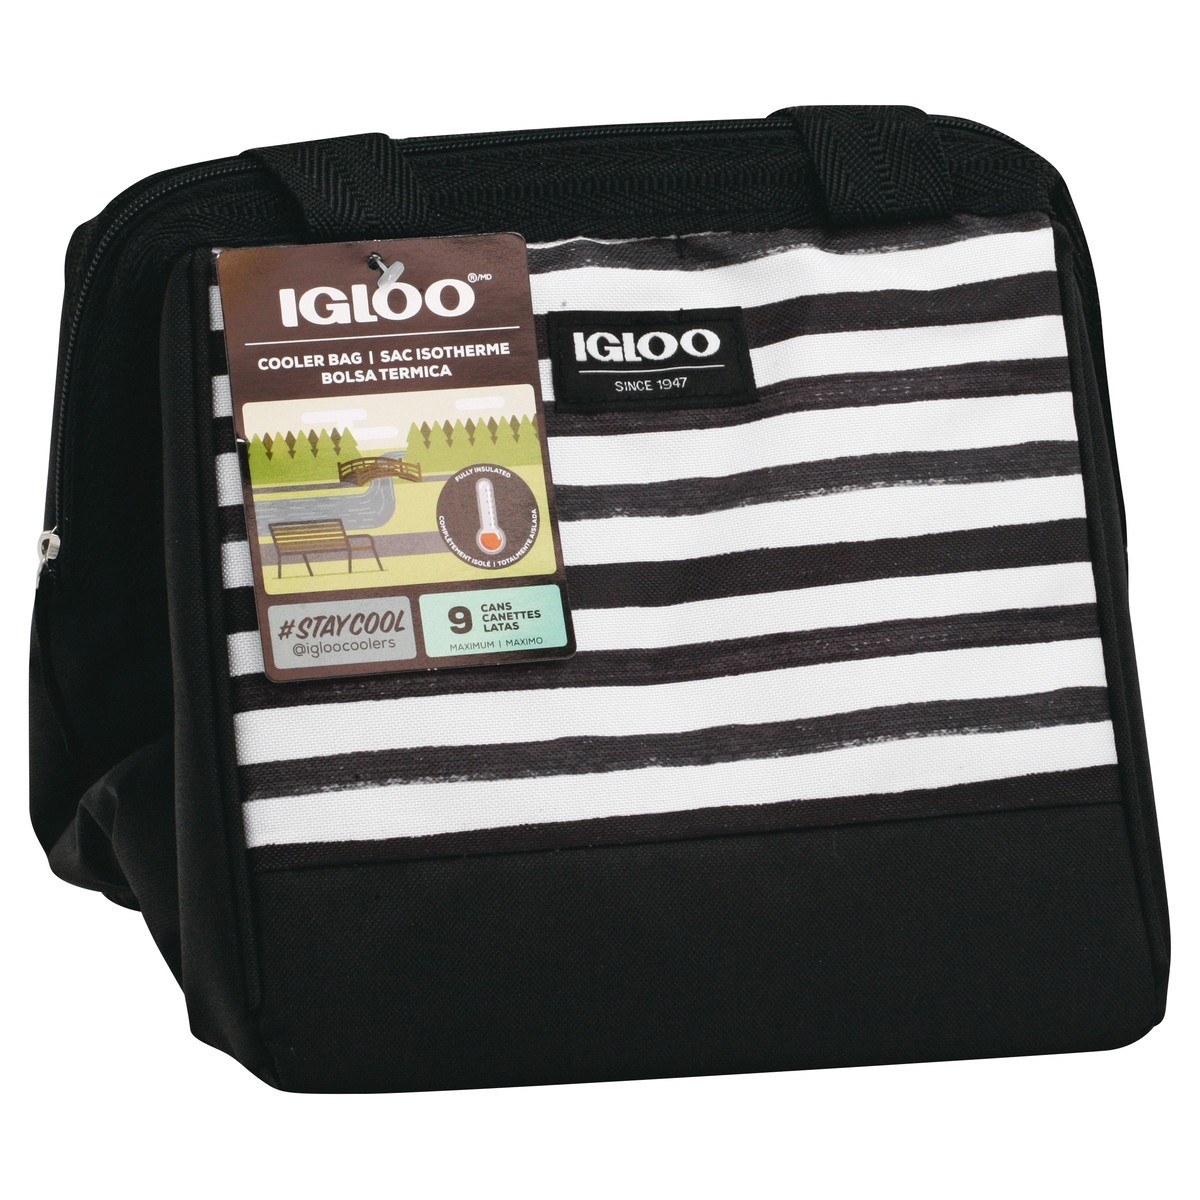 slide 2 of 8, Igloo Cooler Bag, Black/White Stripes, Leftover Tote, 9 Cans, 1 ct